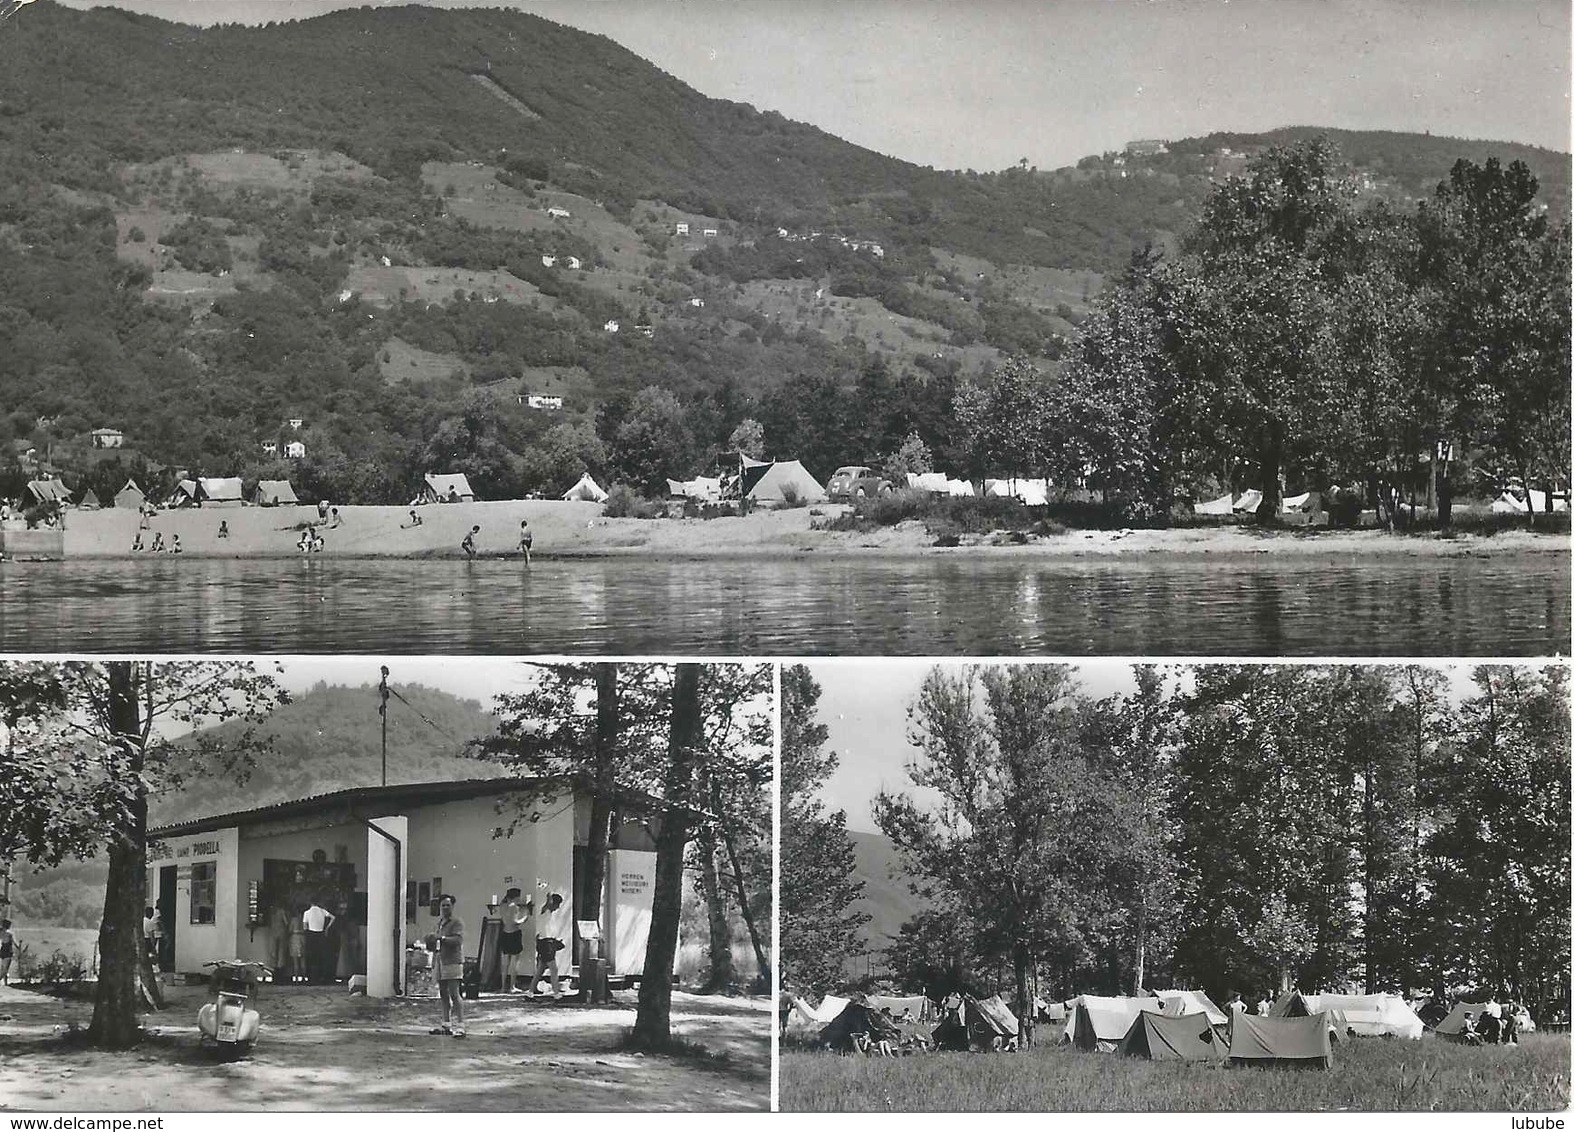 Muzzano - Agnuzzo (Camp.Piodella TCS)          1958 - Muzzano